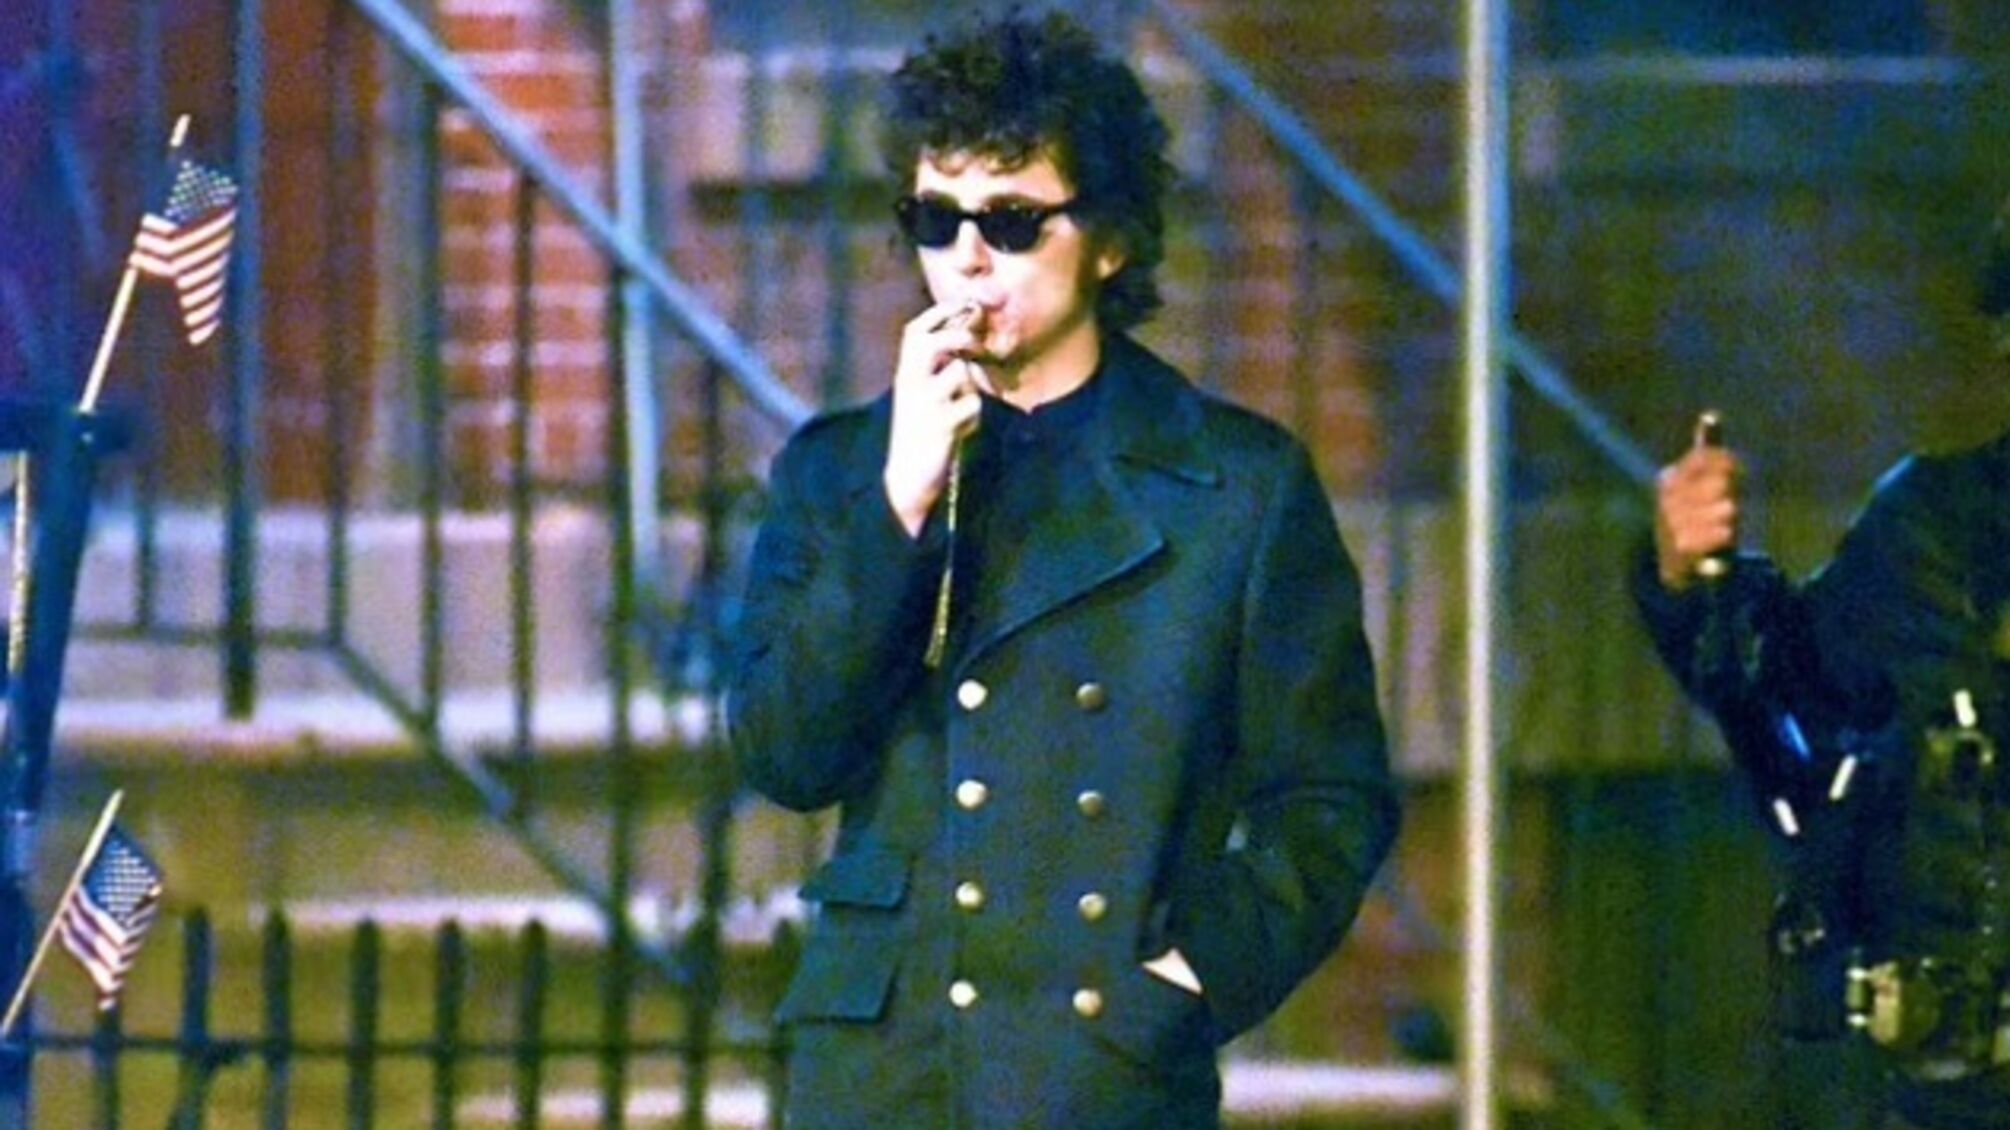 Тімоті Шаламе сфотаграфували в ролі Боба Ділана під час зйомок біографічного фільму про музиканта